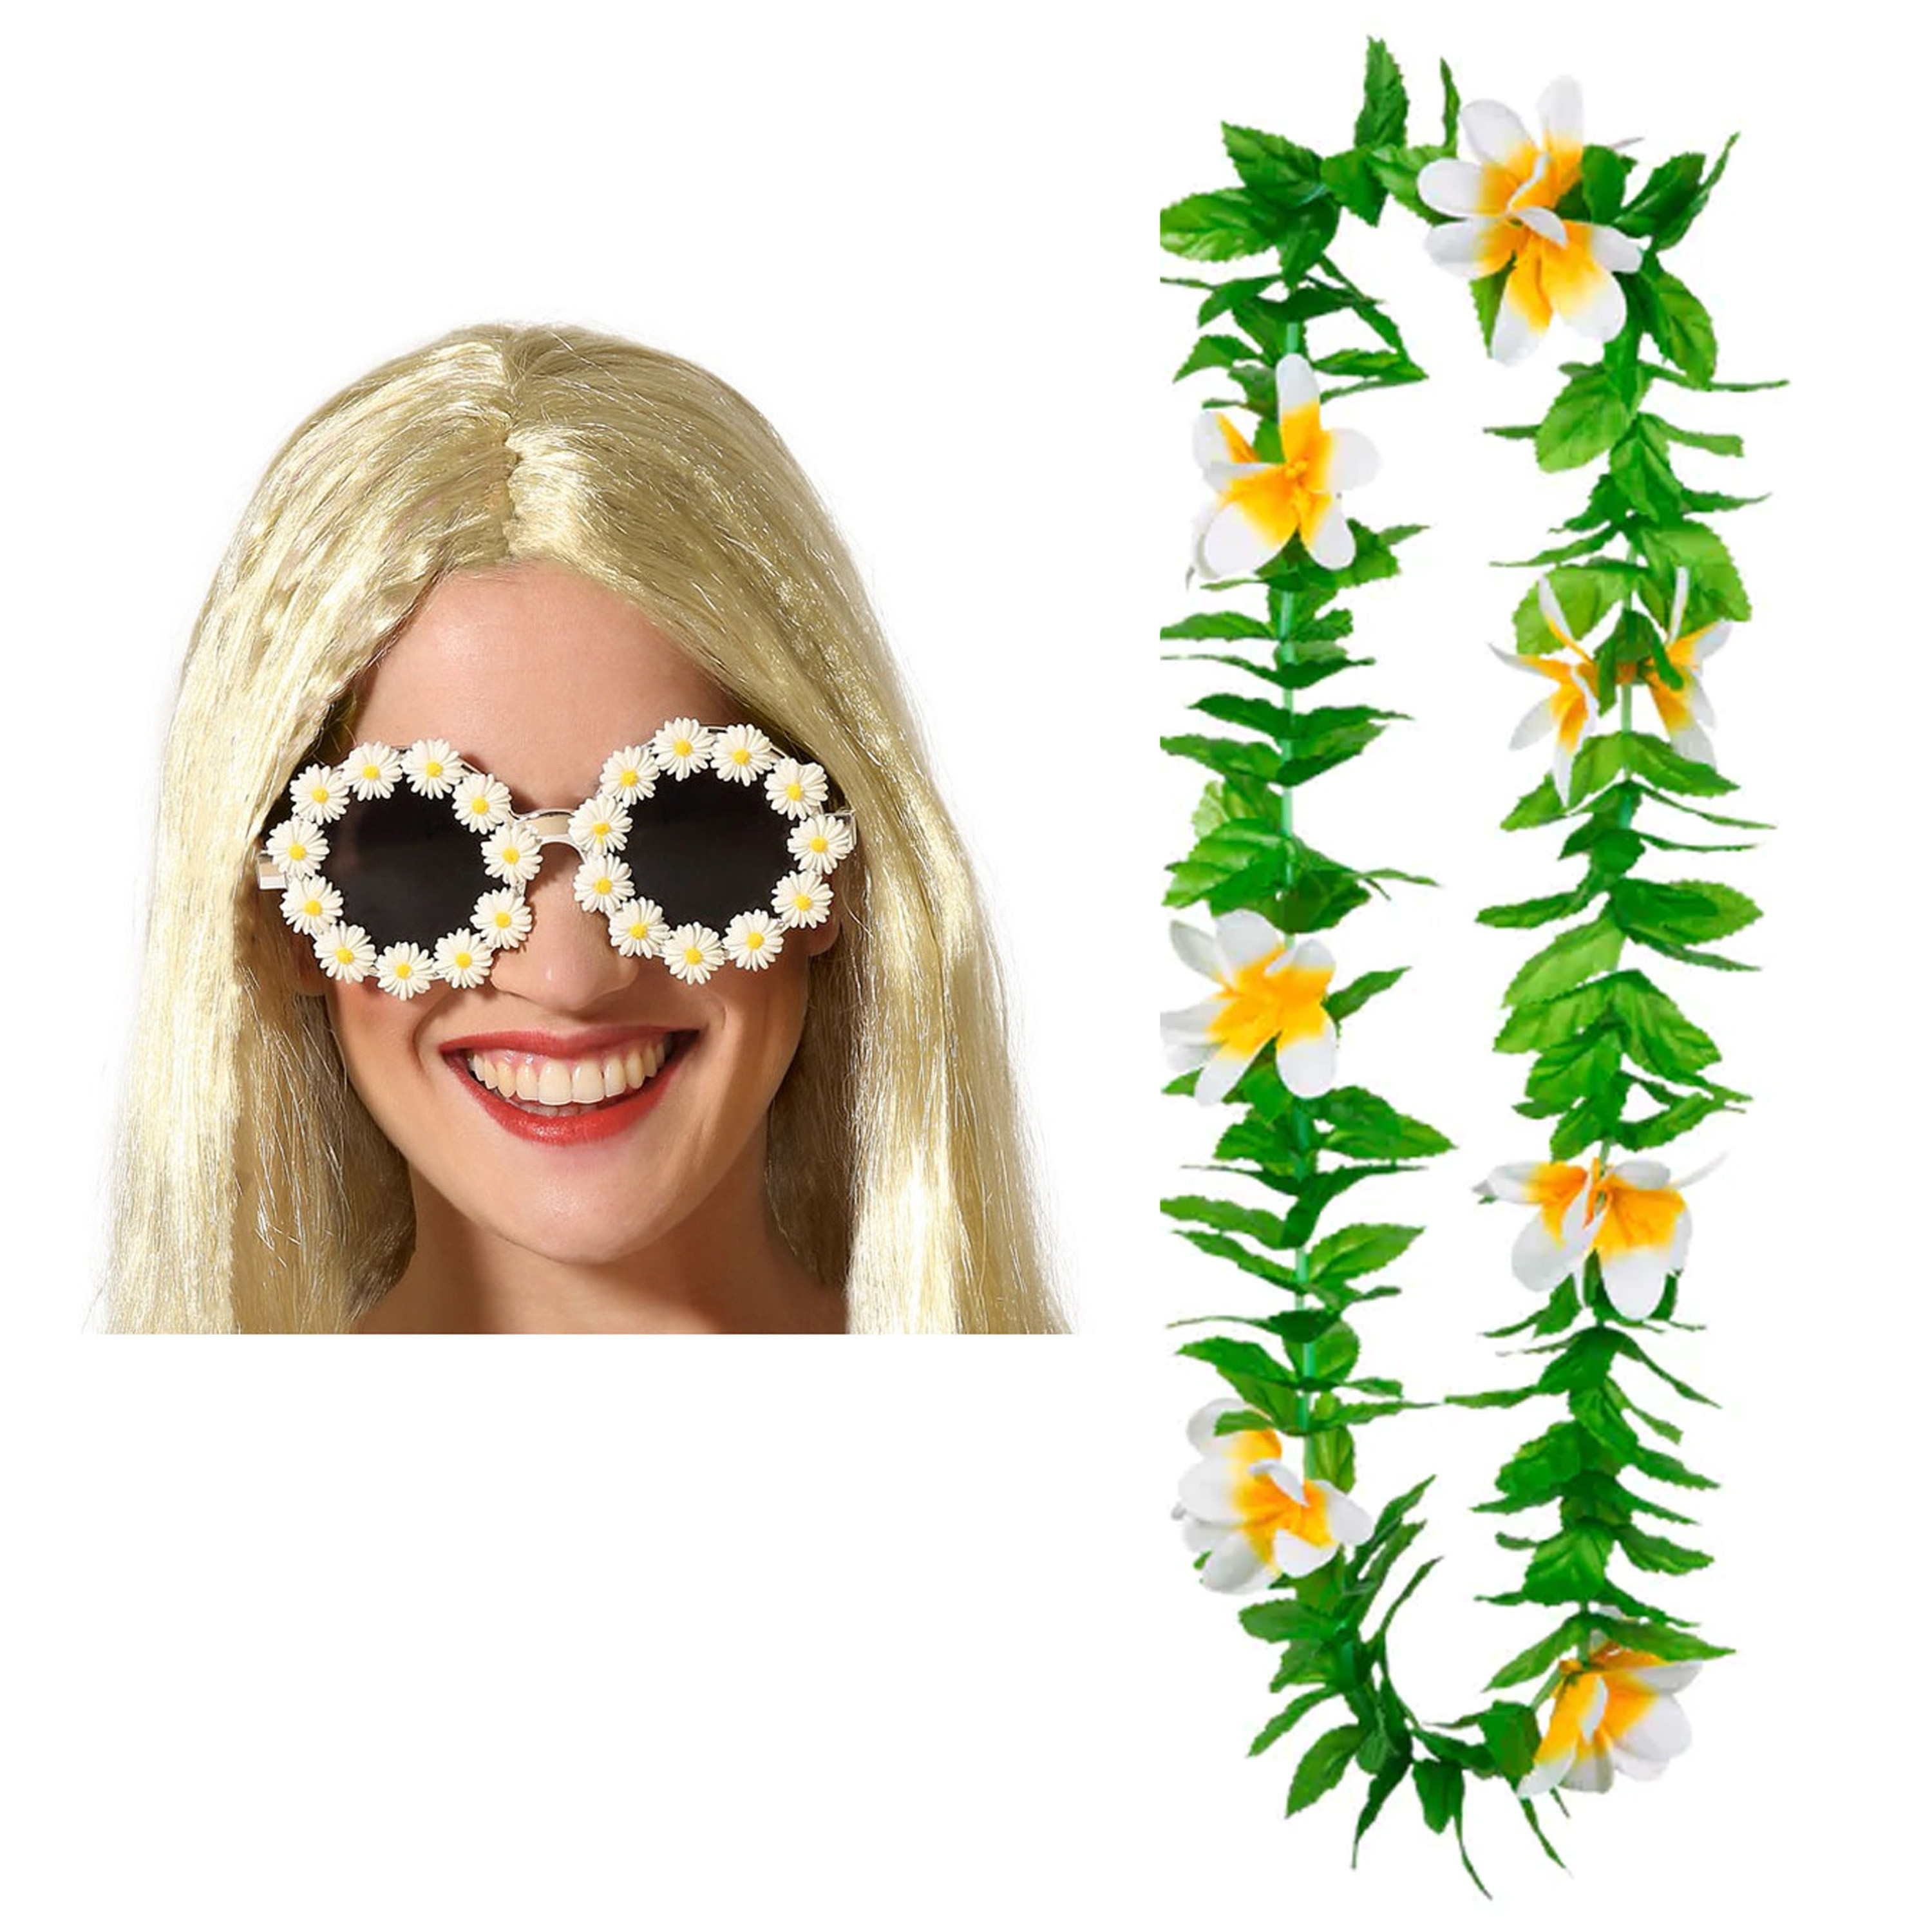 Tropische Hawaii party verkleed accessoires set - bloemen zonnebril - en bloemenkrans groen/wit